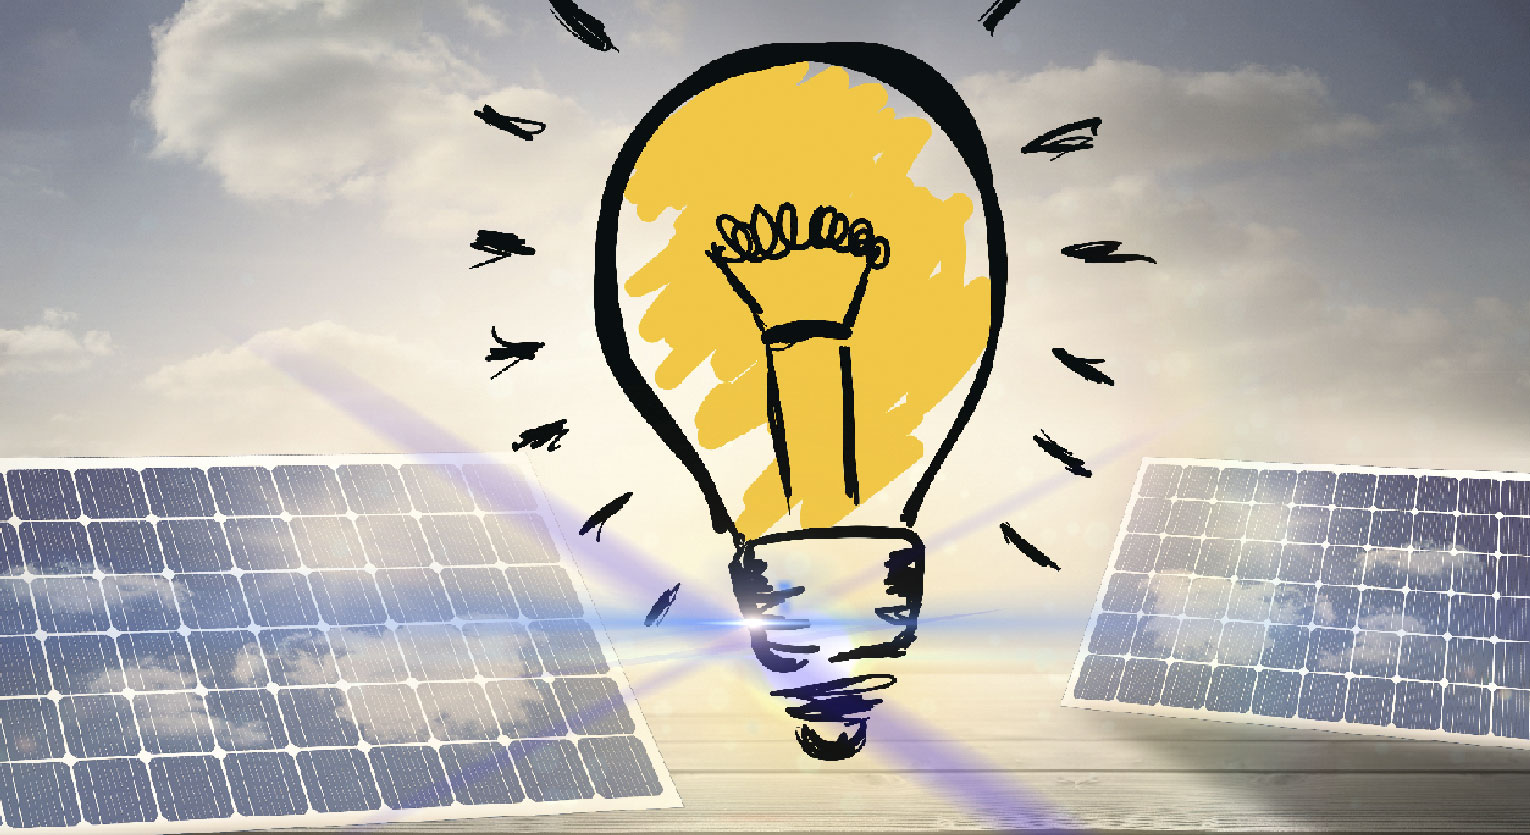 بطاريات NiMH الصديقة للبيئة: تشغيل المصابيح الشمسية بشكل مستدام